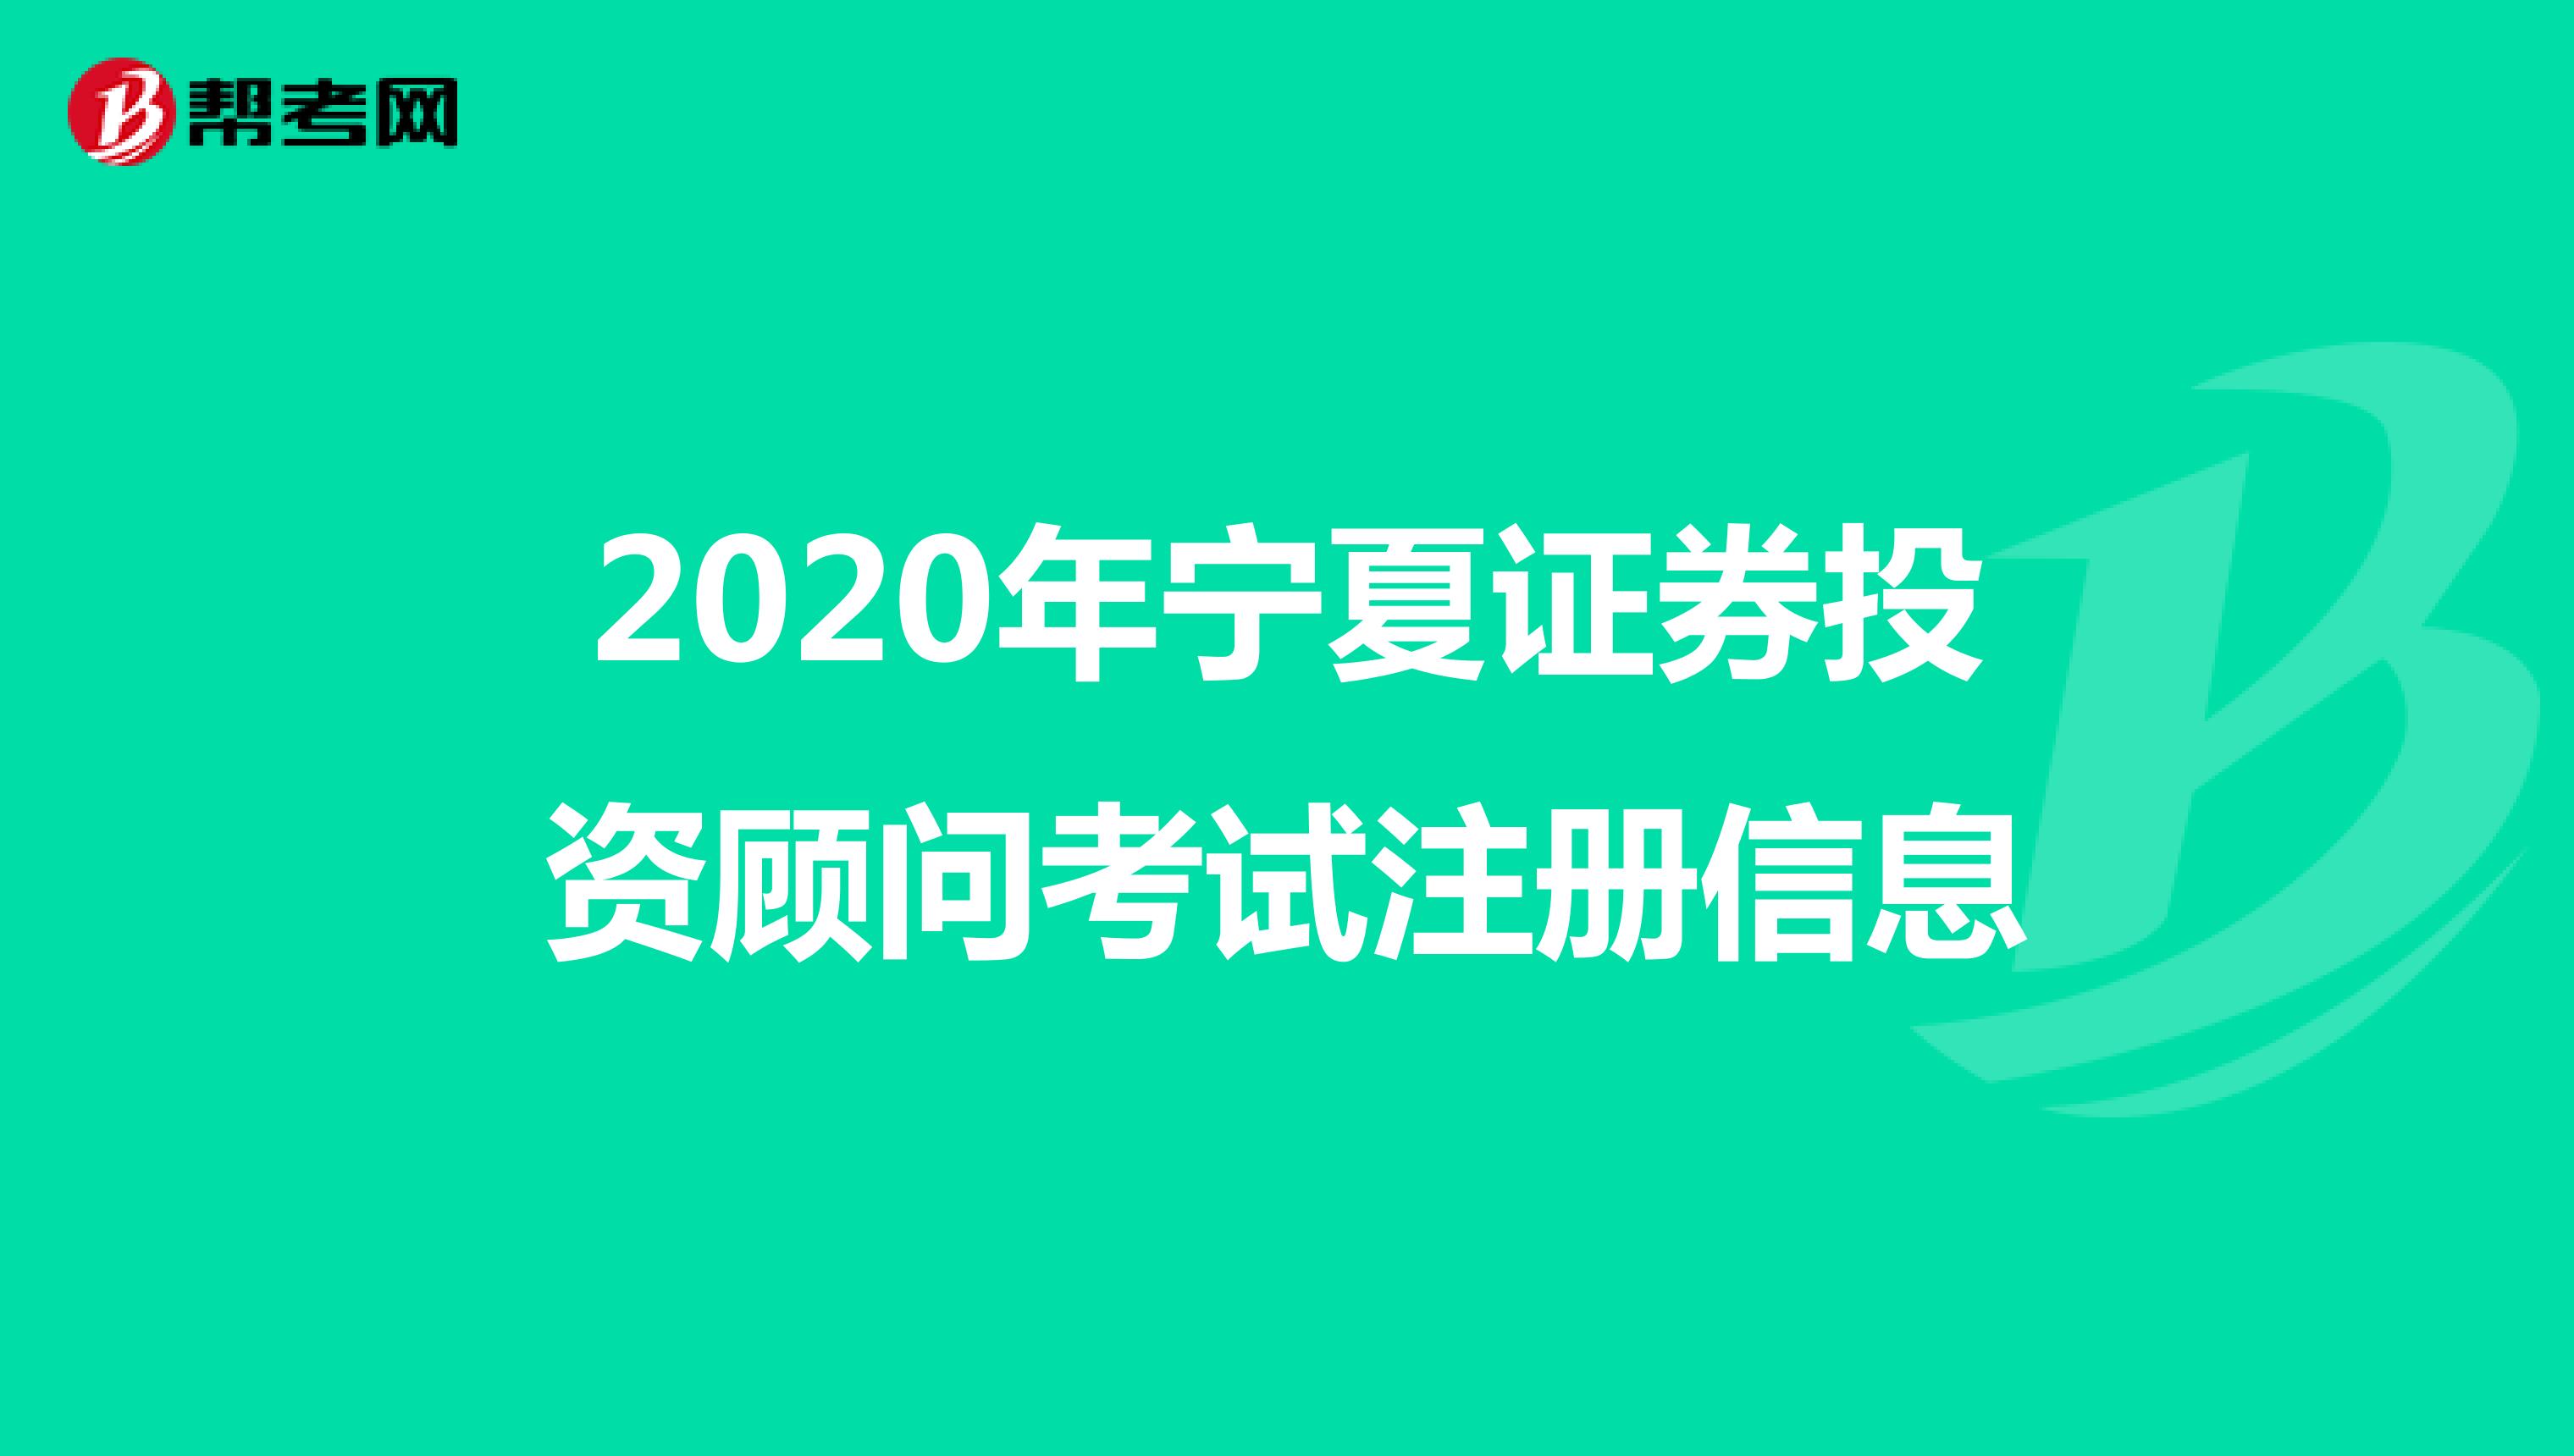 2020年宁夏证券投资顾问考试注册信息 